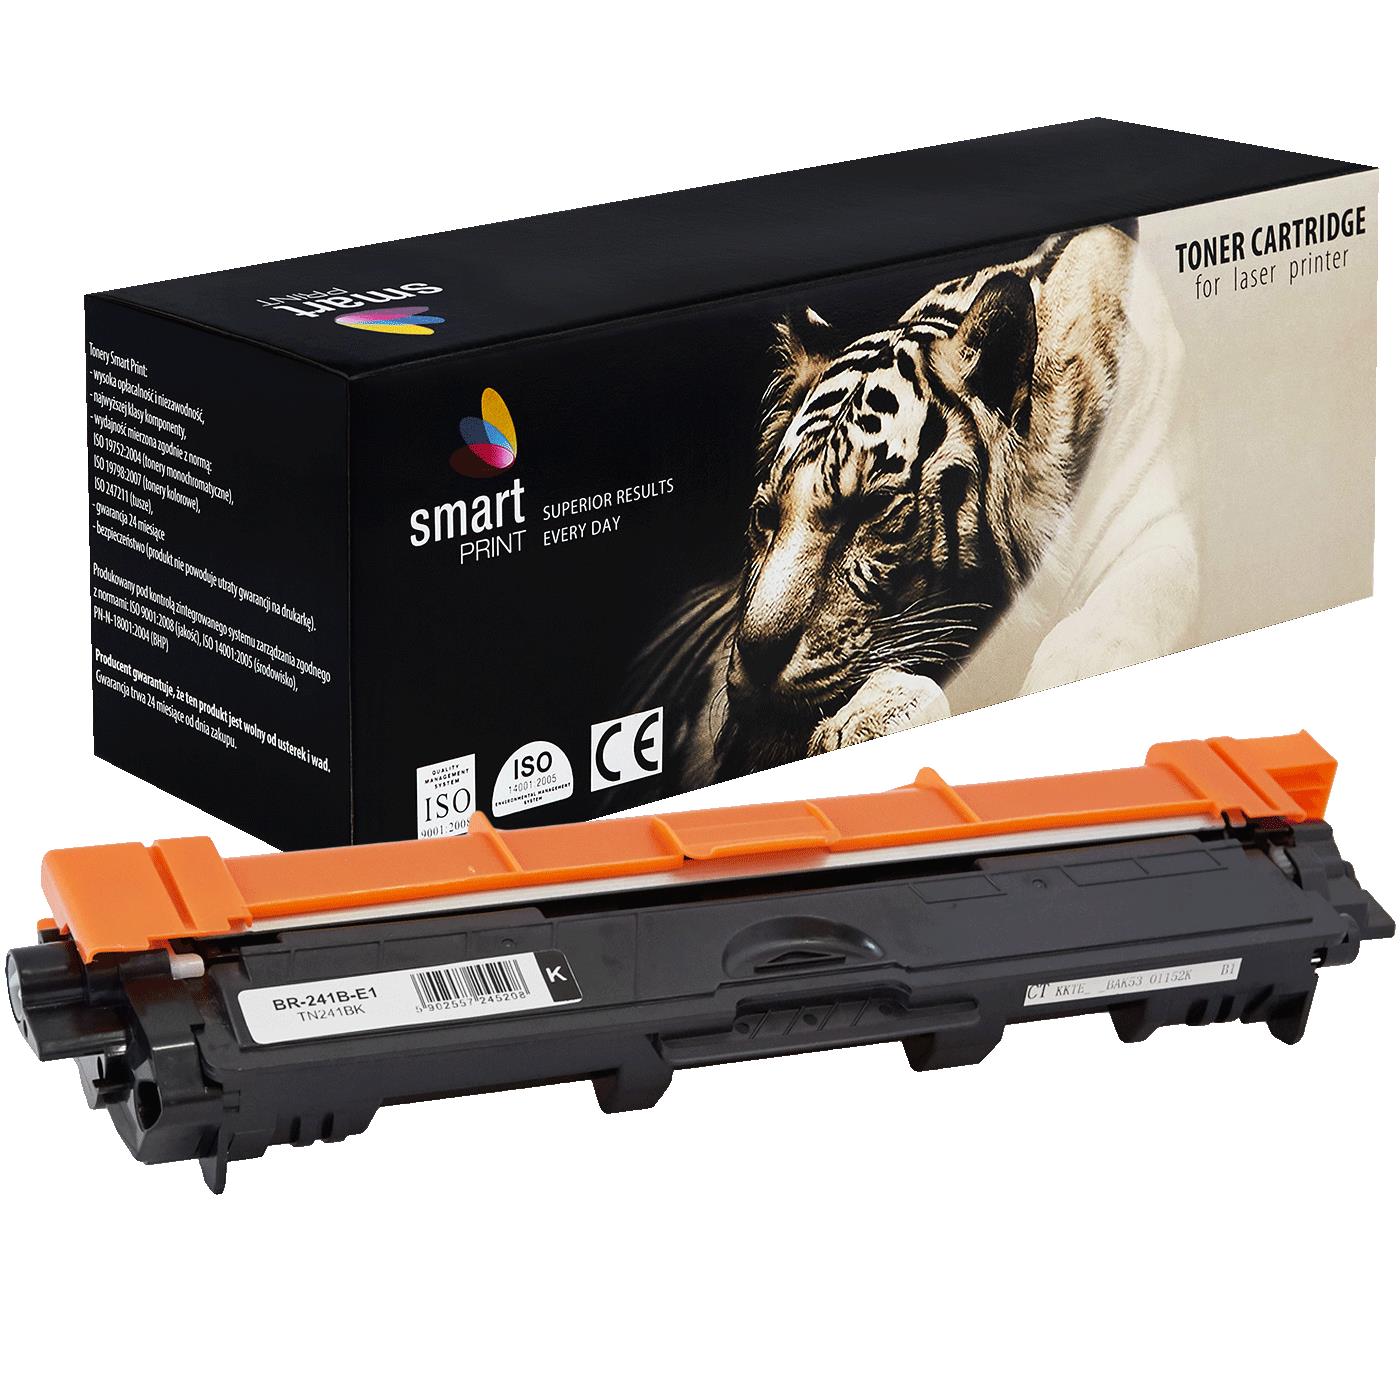 съвместима тонер касета за принтери и печатащи устройства на Brother HL-3150 CDW Toner BR-241B | TN241BK / TN-241 / TN245. Ниски цени, прецизно изпълнение, високо качество.